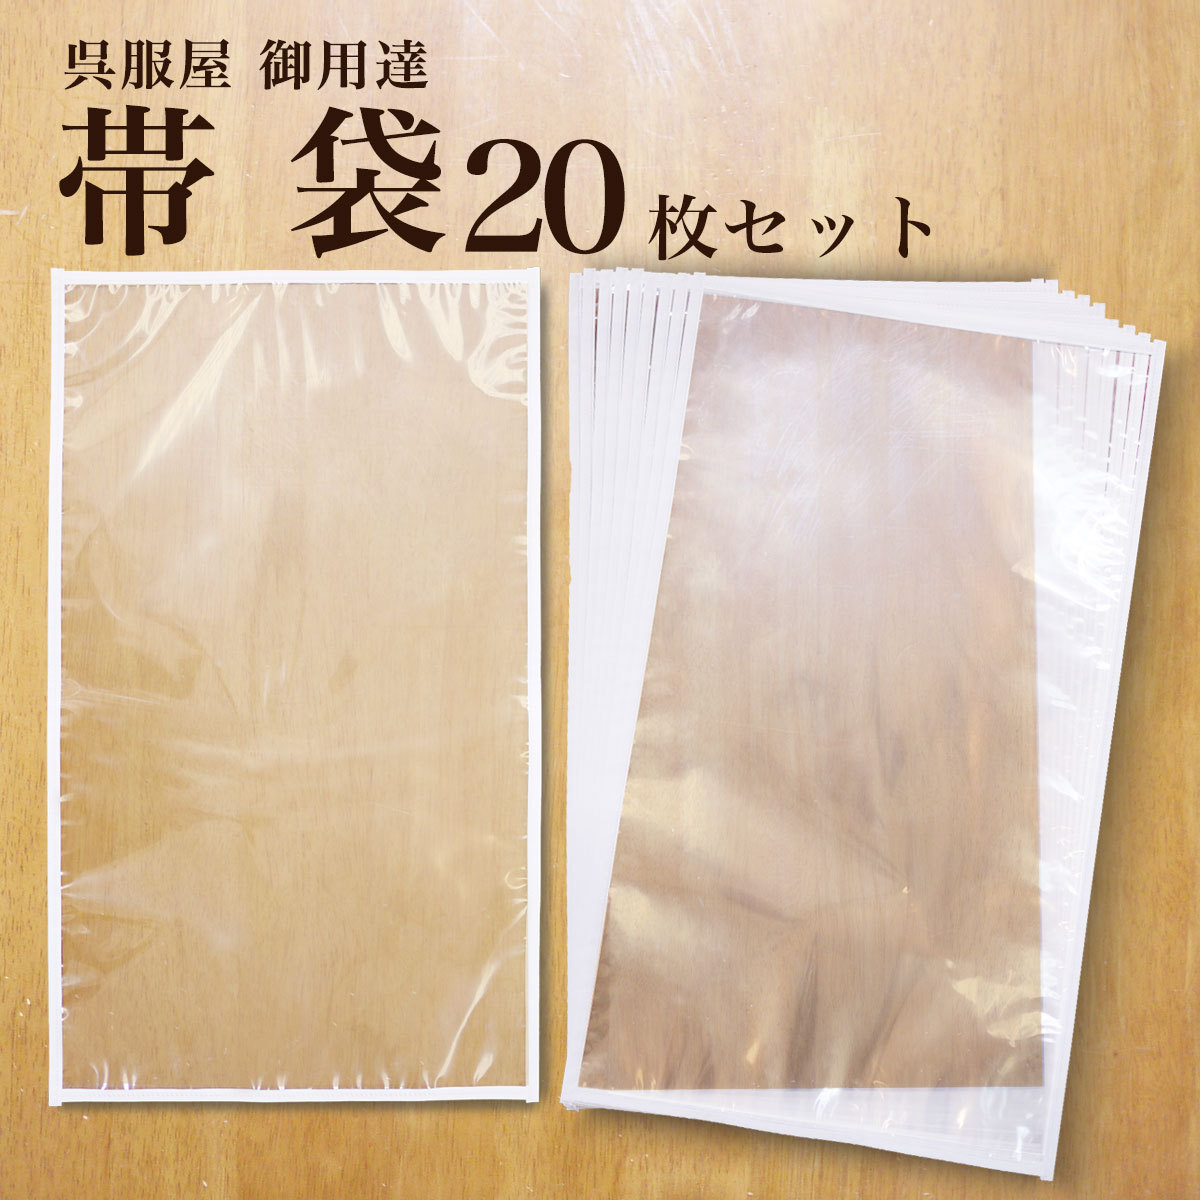 保管 帯袋 着物 20枚セット 日本製 帯 収納 保管 袋帯 名古屋帯 京袋帯